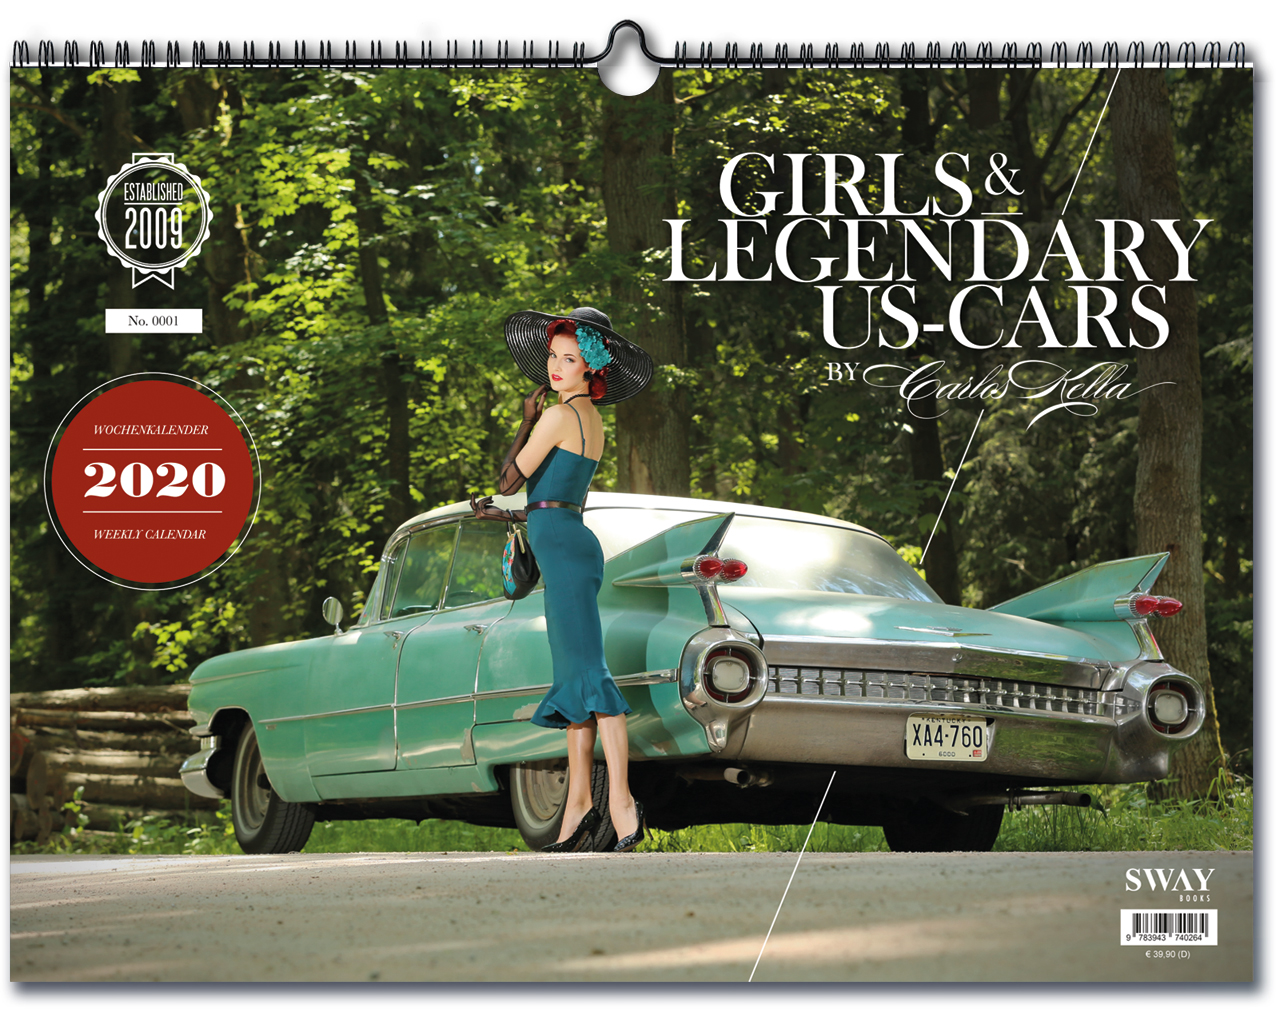 Der "Girls & legendary US-Cars" 2020 Wochenkalender von Carlos Kella ist ab sofort vorbestellbar.